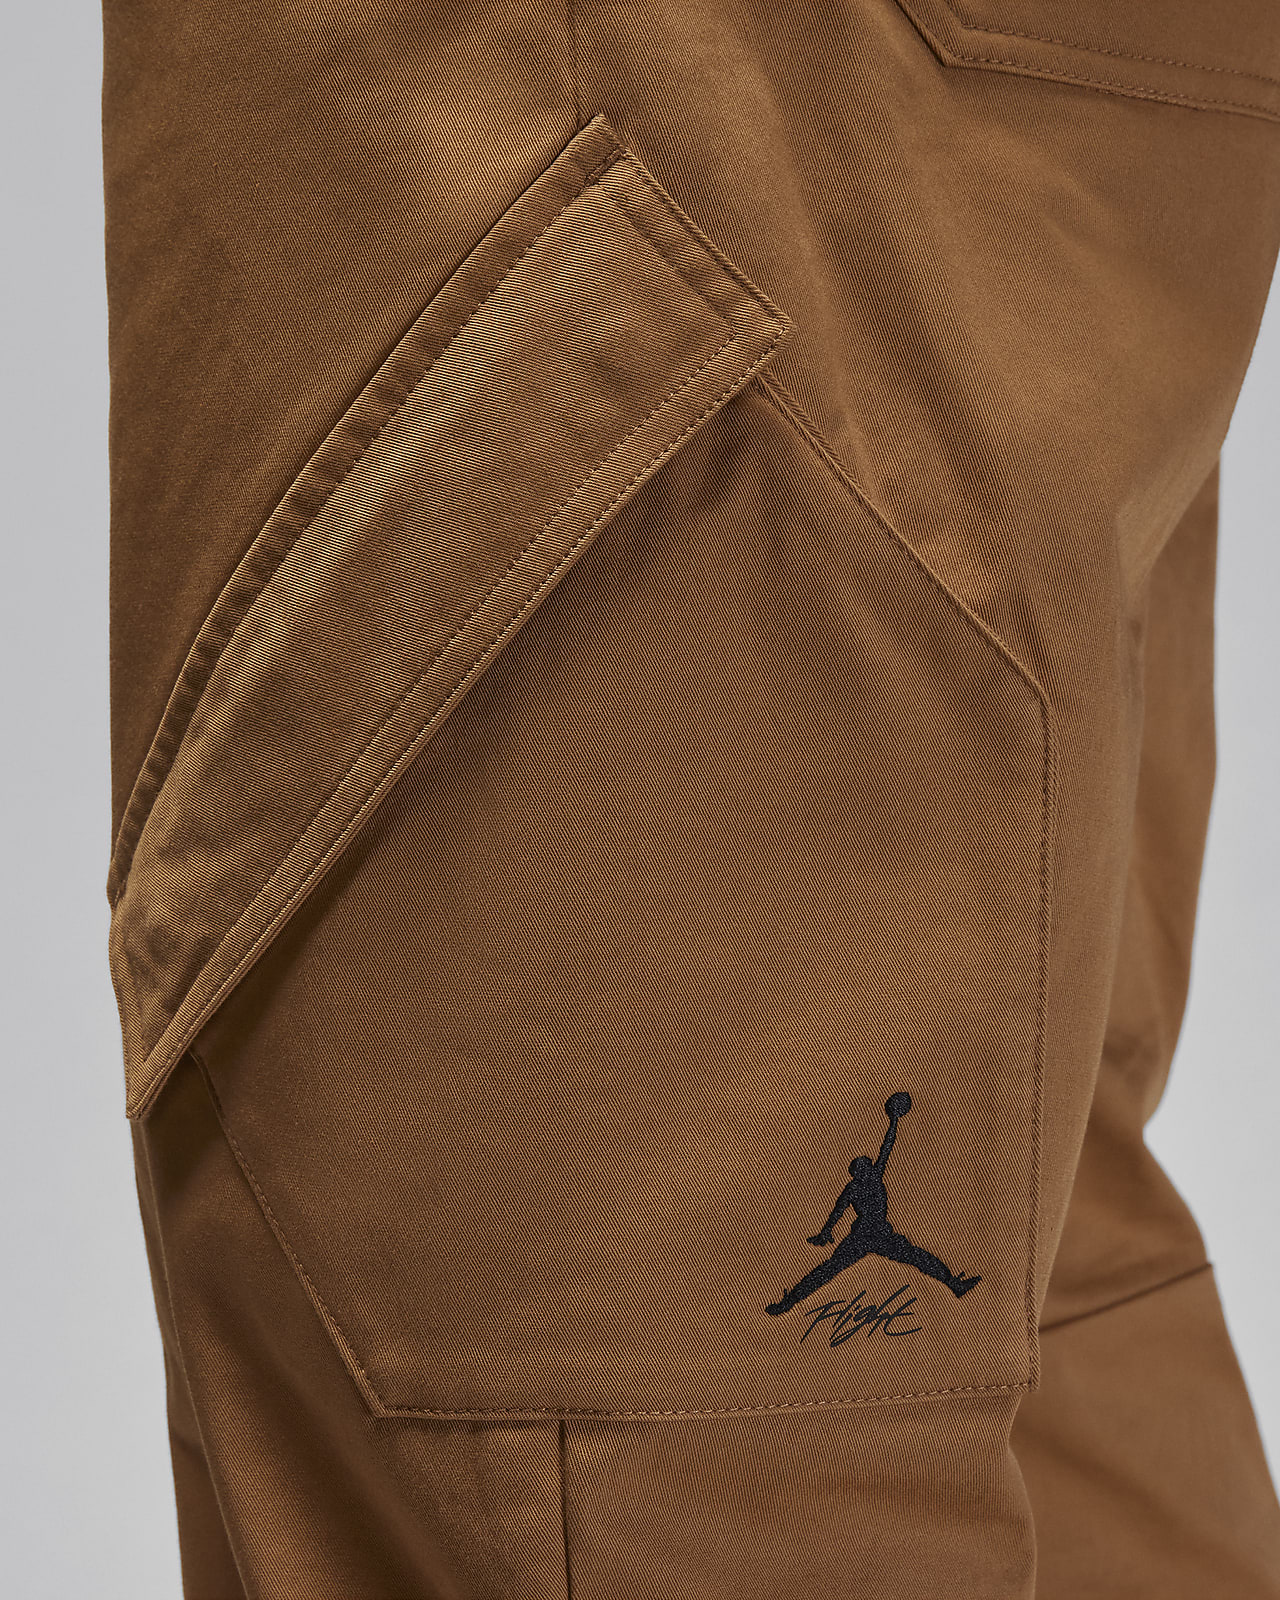 Jordan Essentials Men's Chicago Trousers